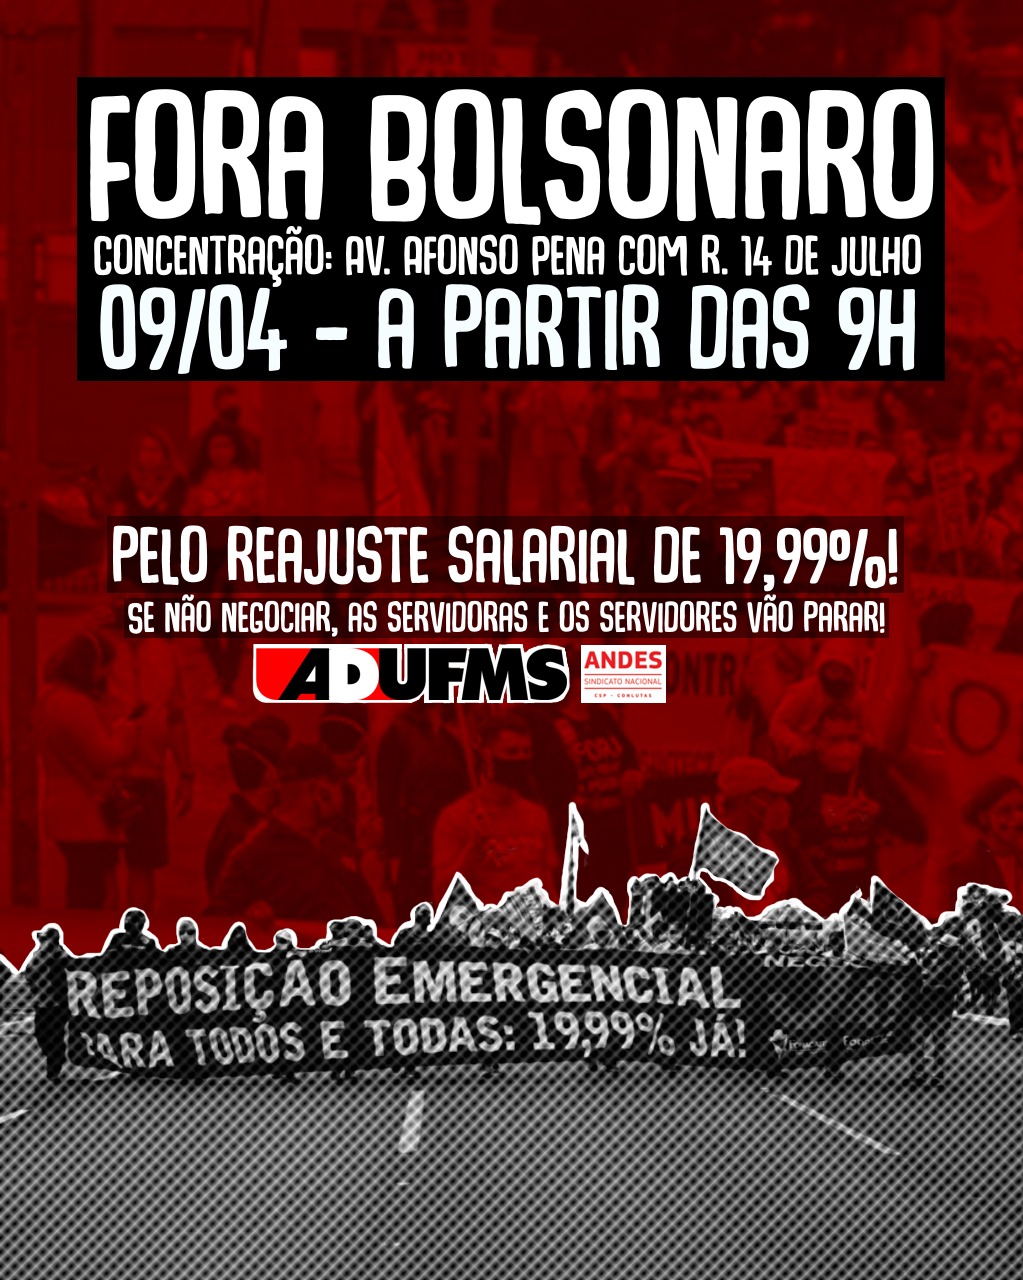 Ato “Fora Bolsonaro” ocorre neste sábado em Campo Grande